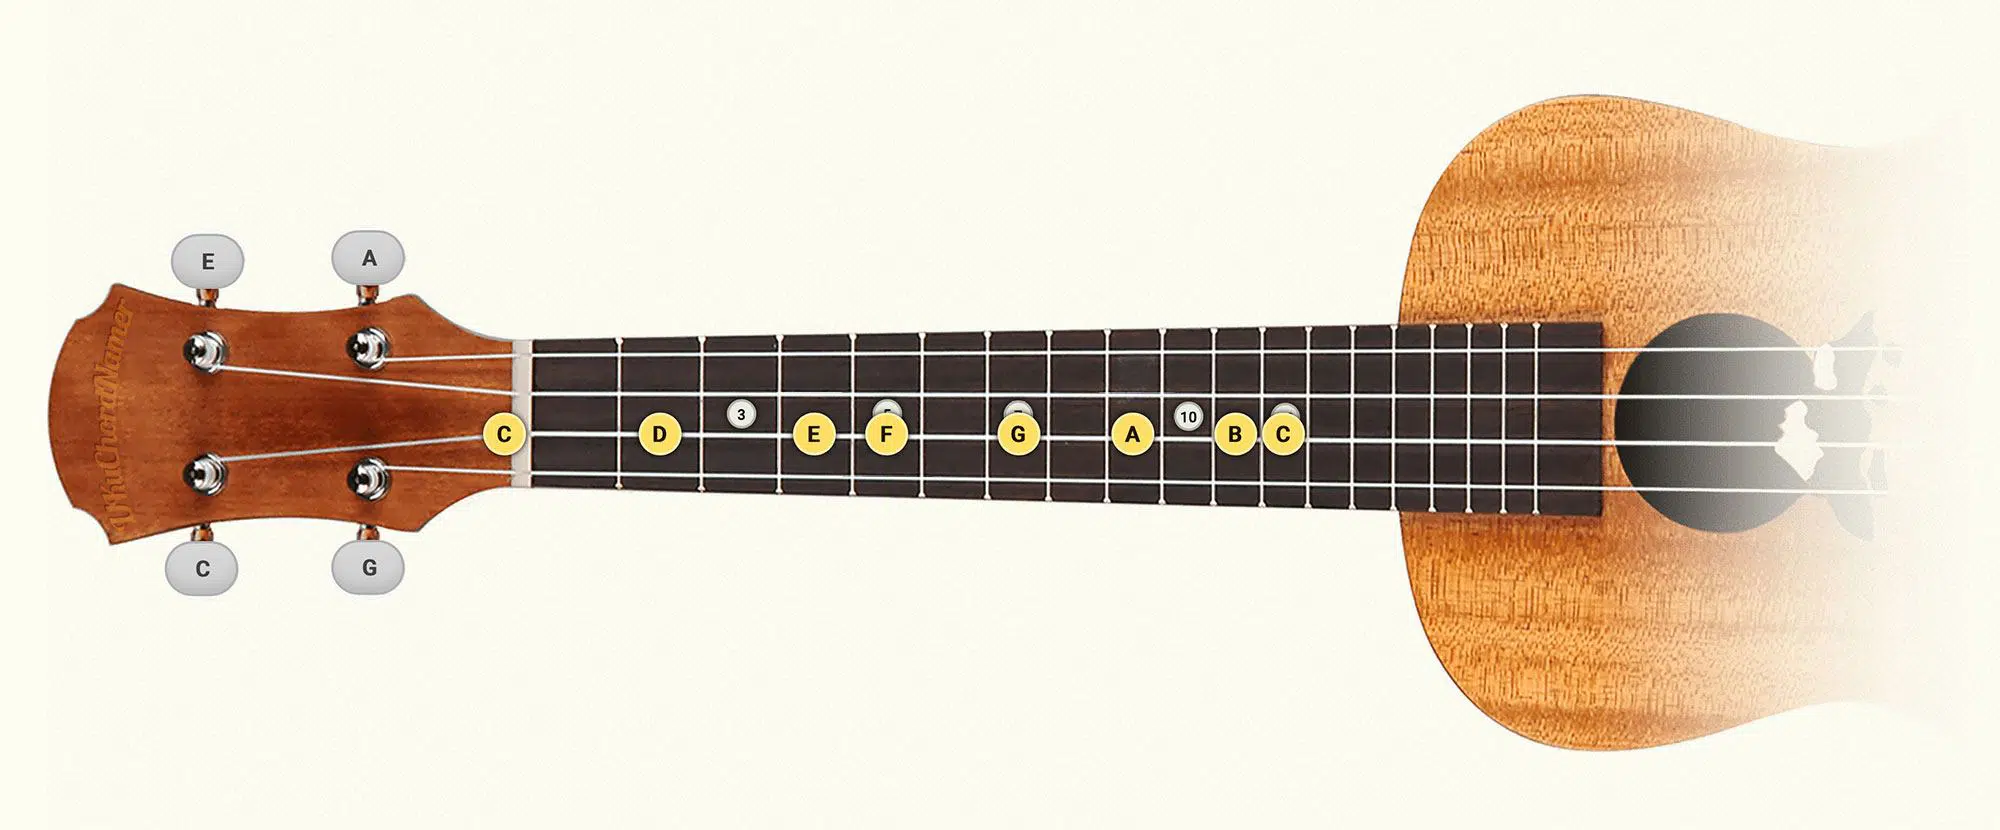 C major ukulele scale